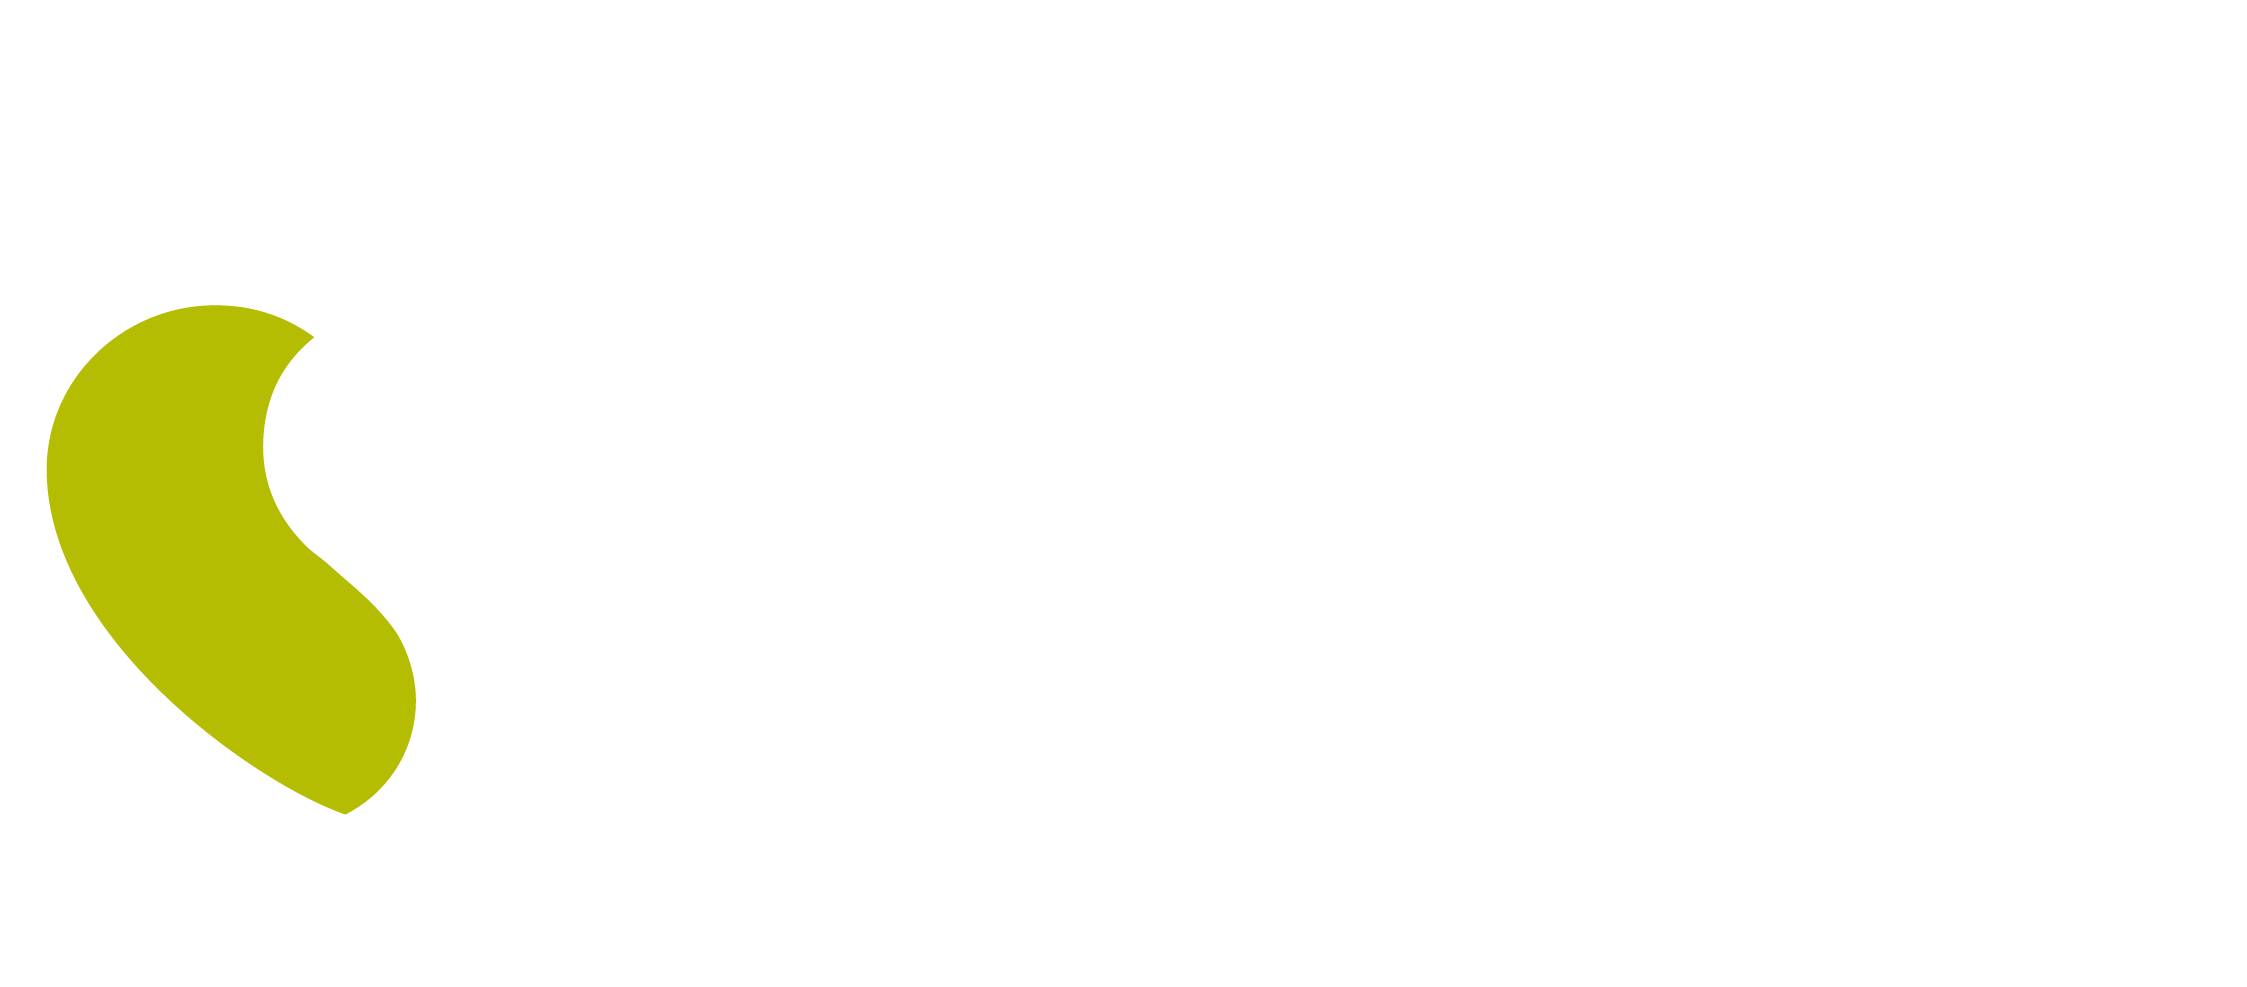 Logo de Seguros sólo en Soriana